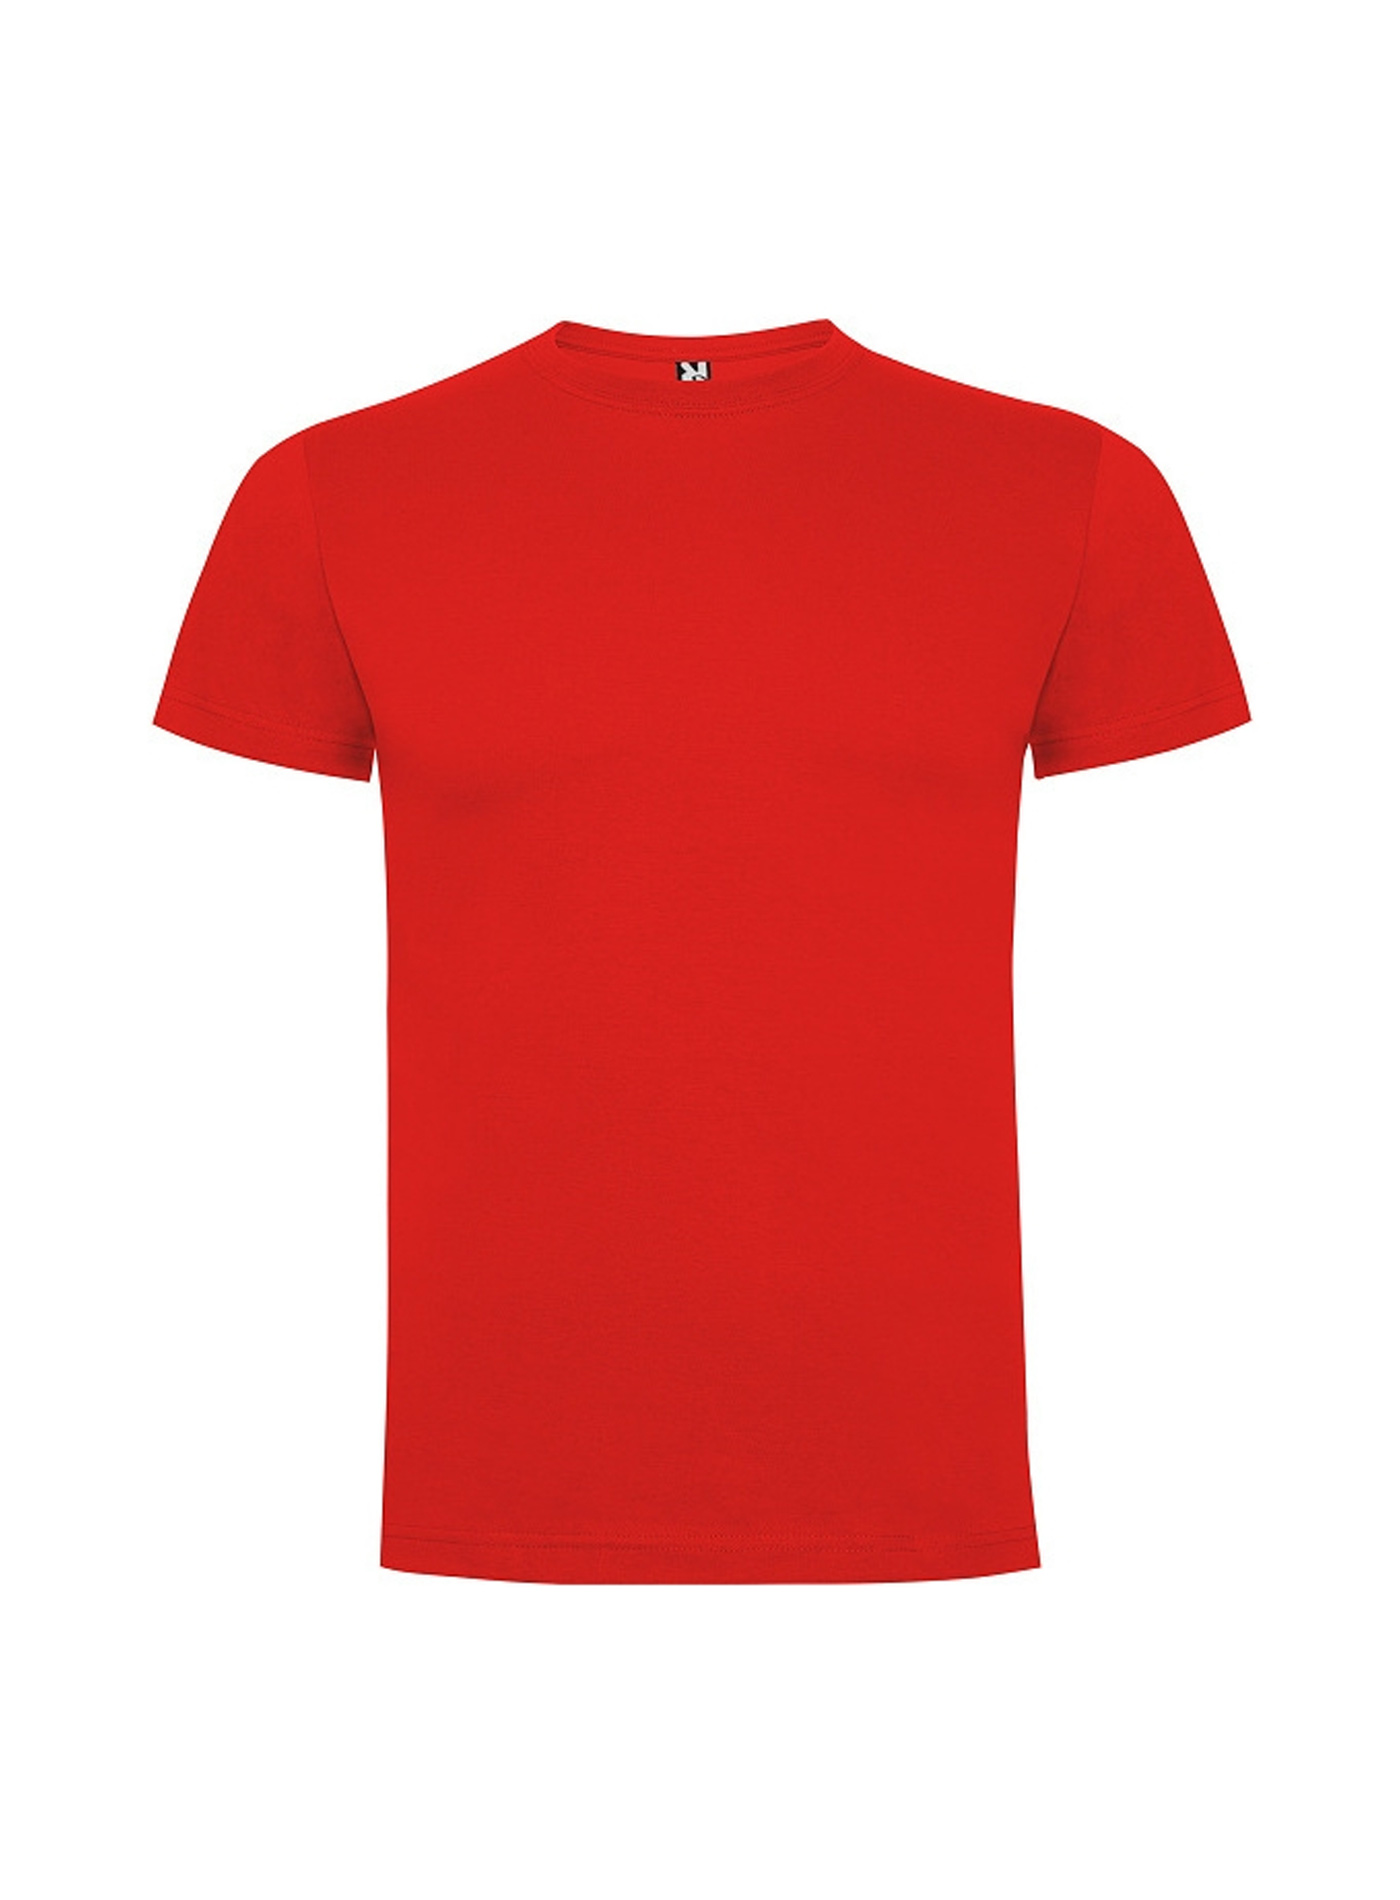 Dětské tričko Roly Dogo premium - Červená 3-4